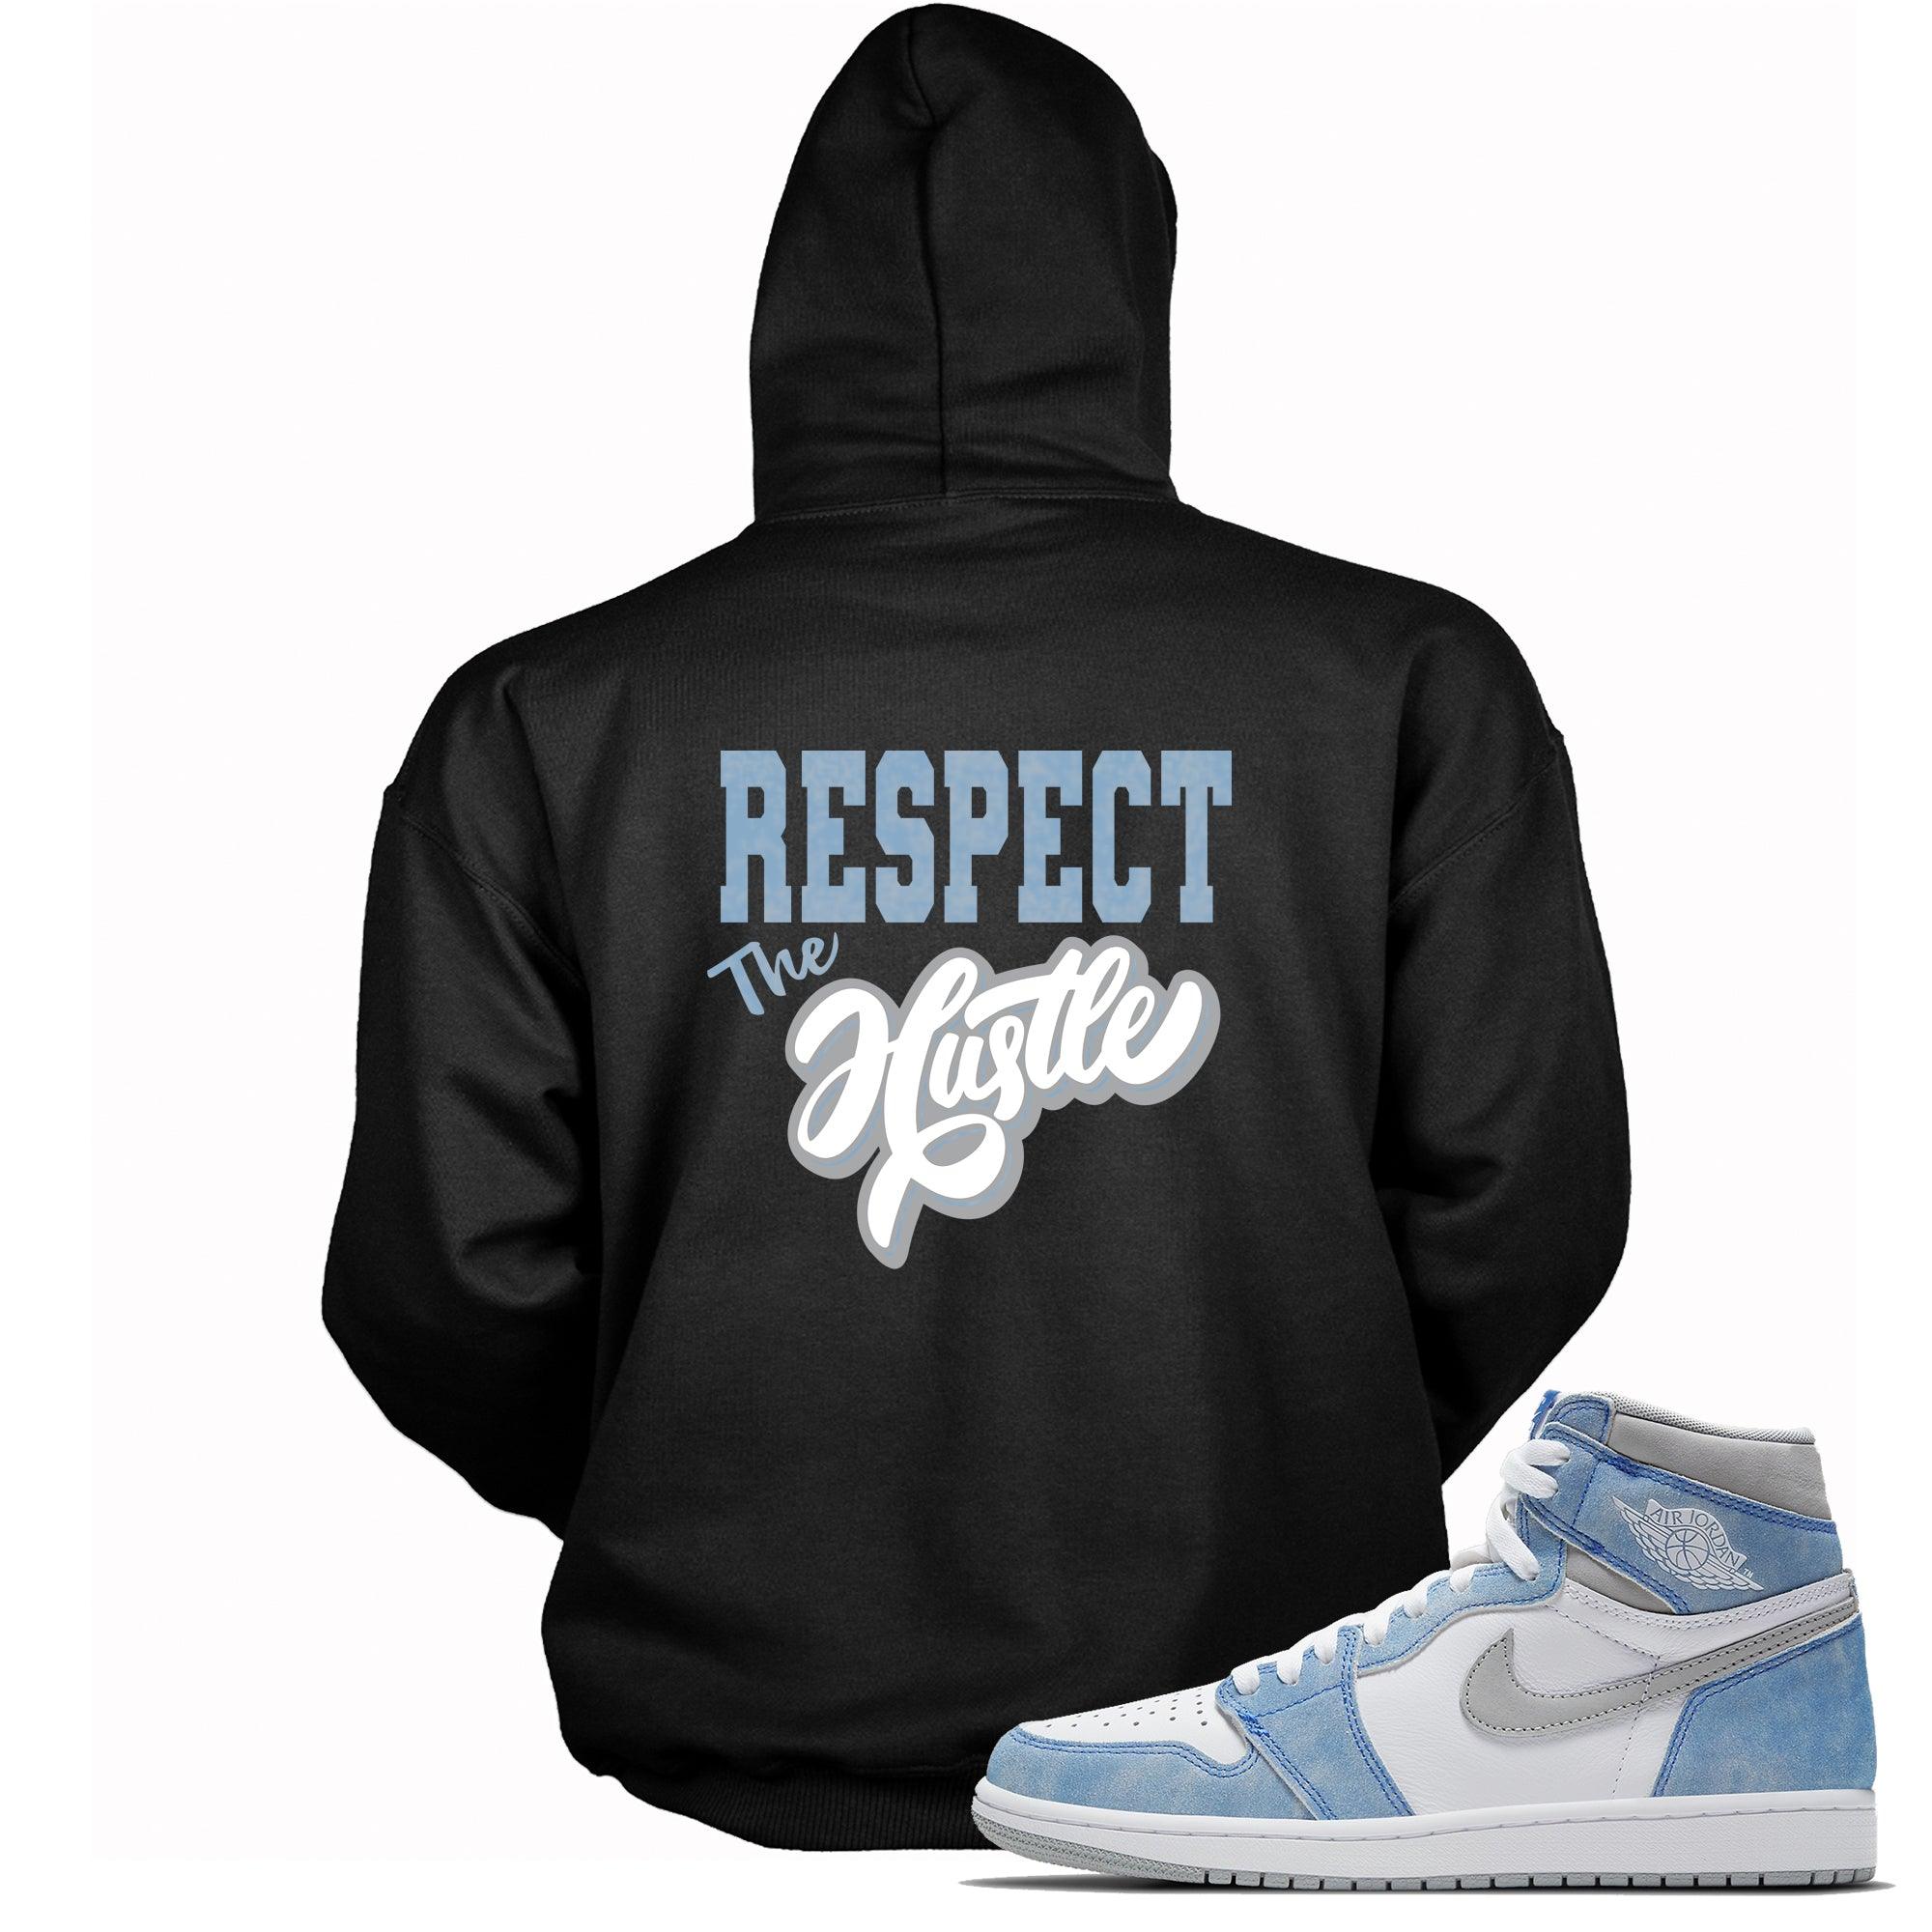 Black Respect The Hustle Hoodie AJ Retro 1 High OG Hyper Royal photo